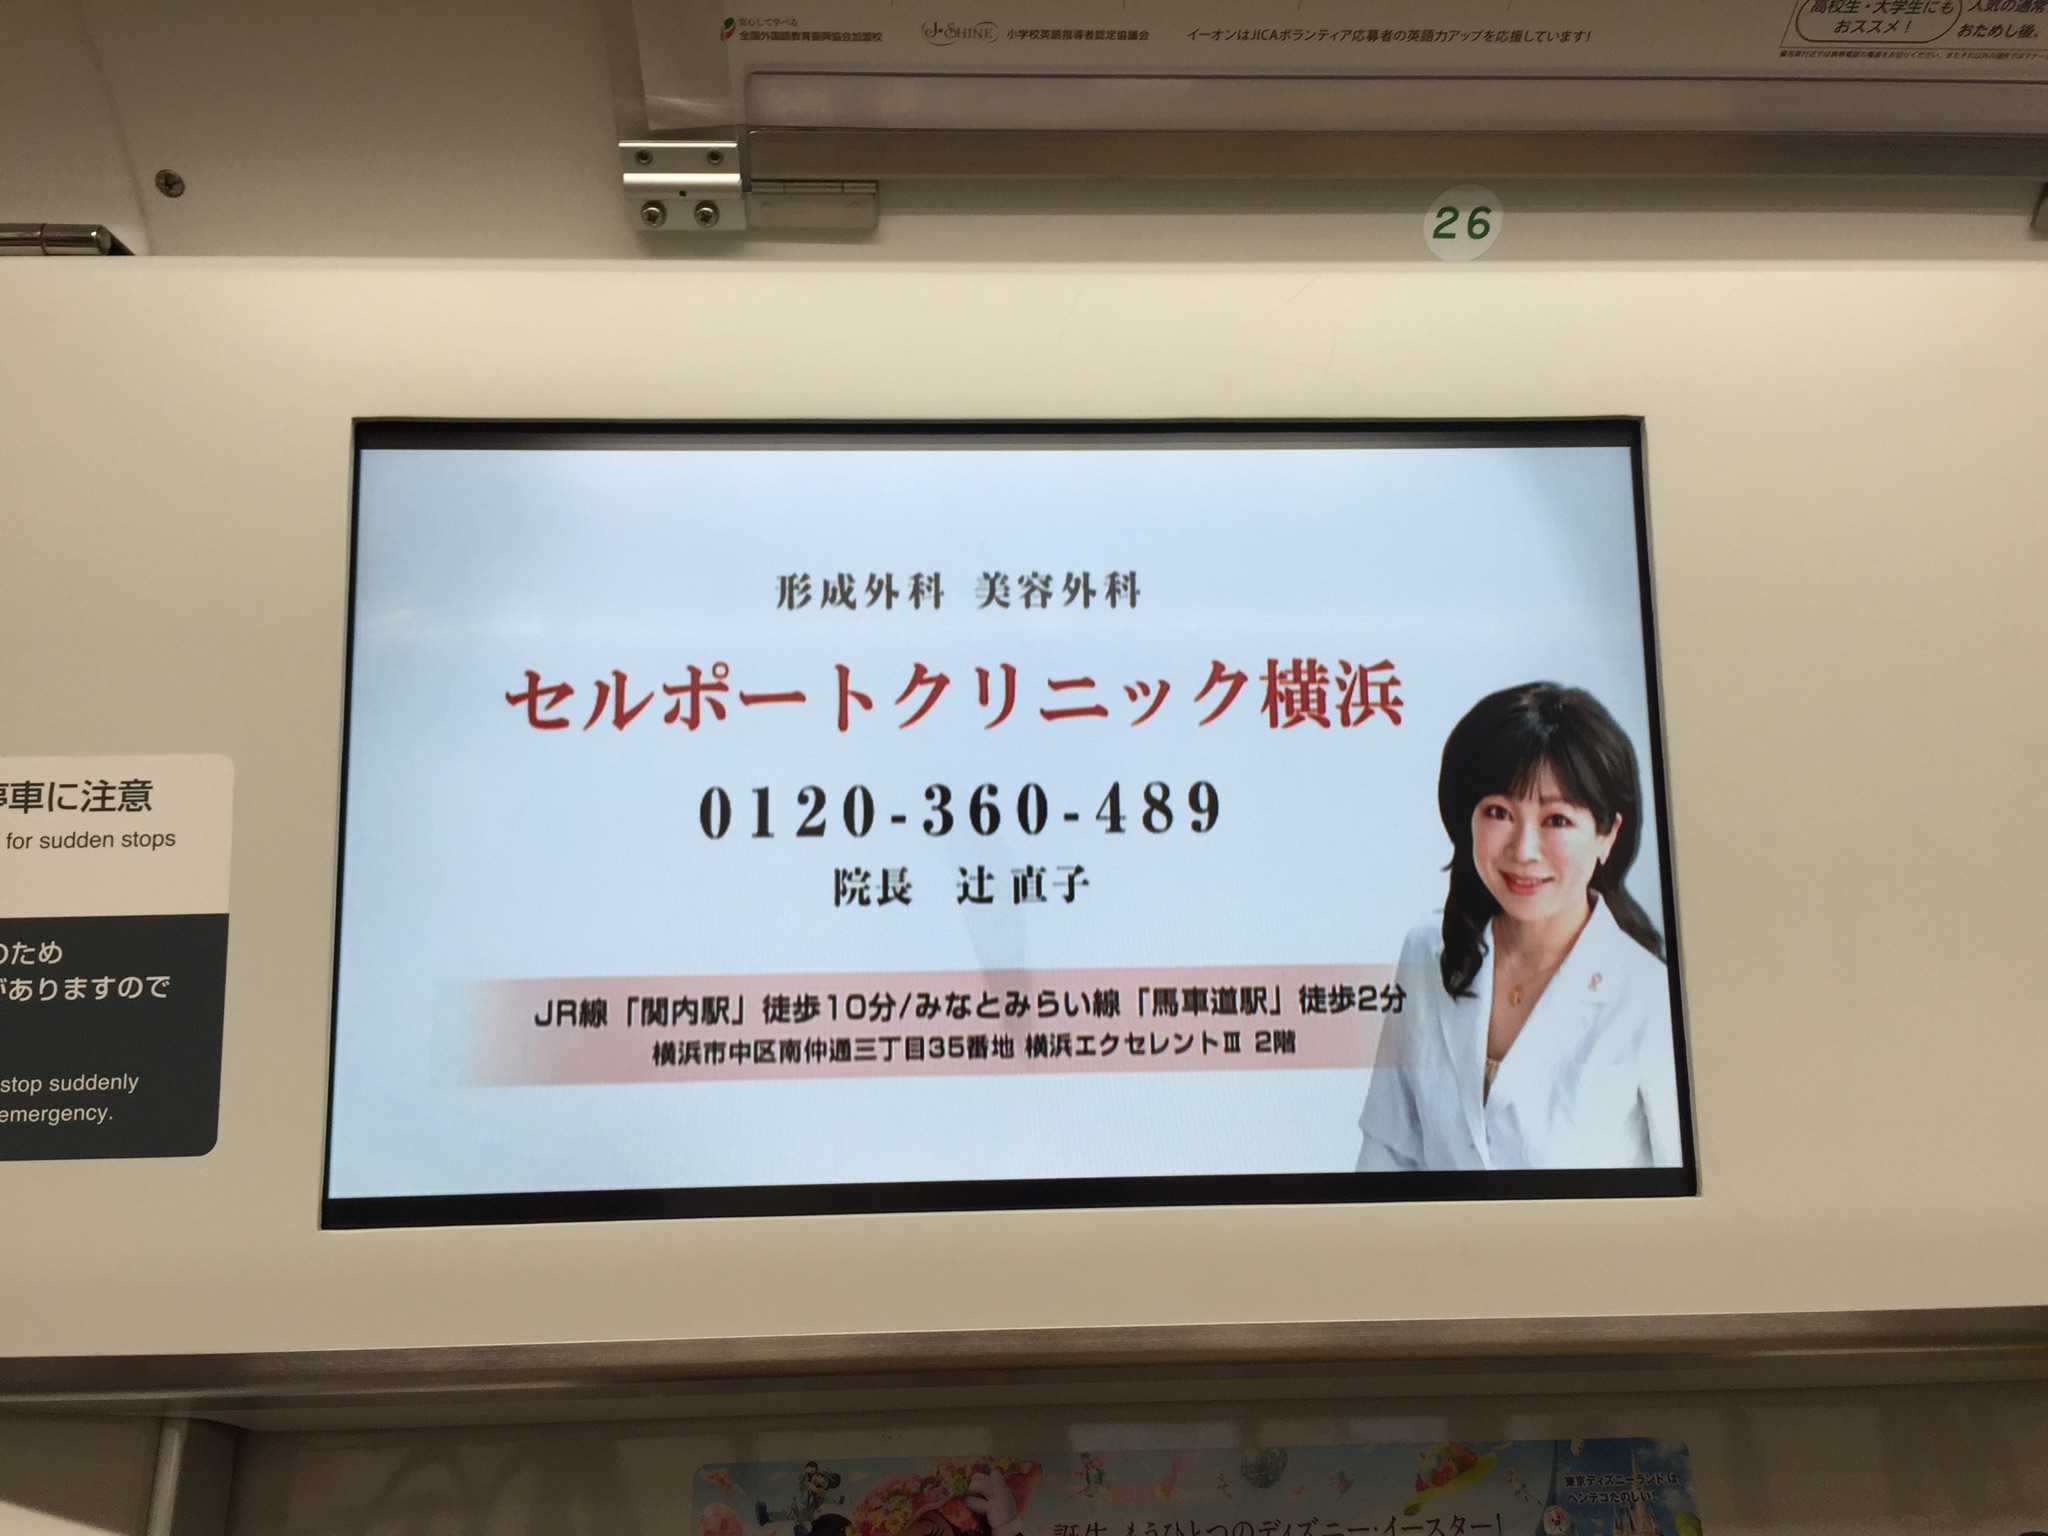 セルポートクリニック横浜様・JR埼京線トレインチャンネル広告